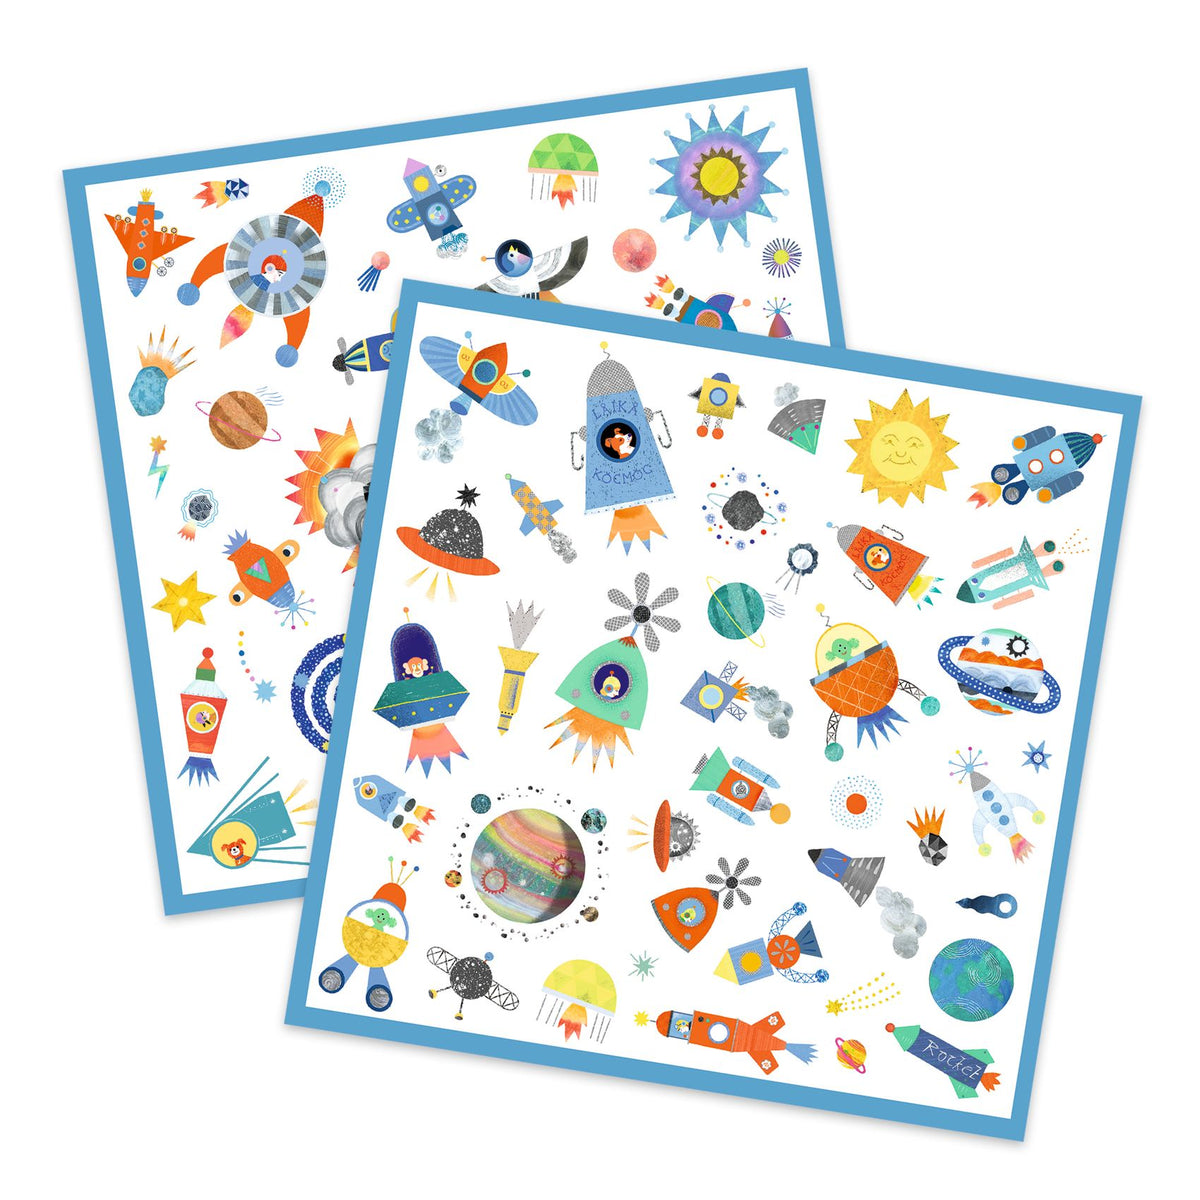 Ein Täschchen mit 160 Stickern zum Thema Weltraum: Raketen, Astronauten, Planeten, Sterne... Für jeden Geschmack ist etwas dabei! Das Kind klebt die zahlreichen Sticker nach Wunsch auf und erschafft schöne Szenen oder nutzt sie als Dekoration für andere Objekte!Inhalt: 160 Papiersticker.